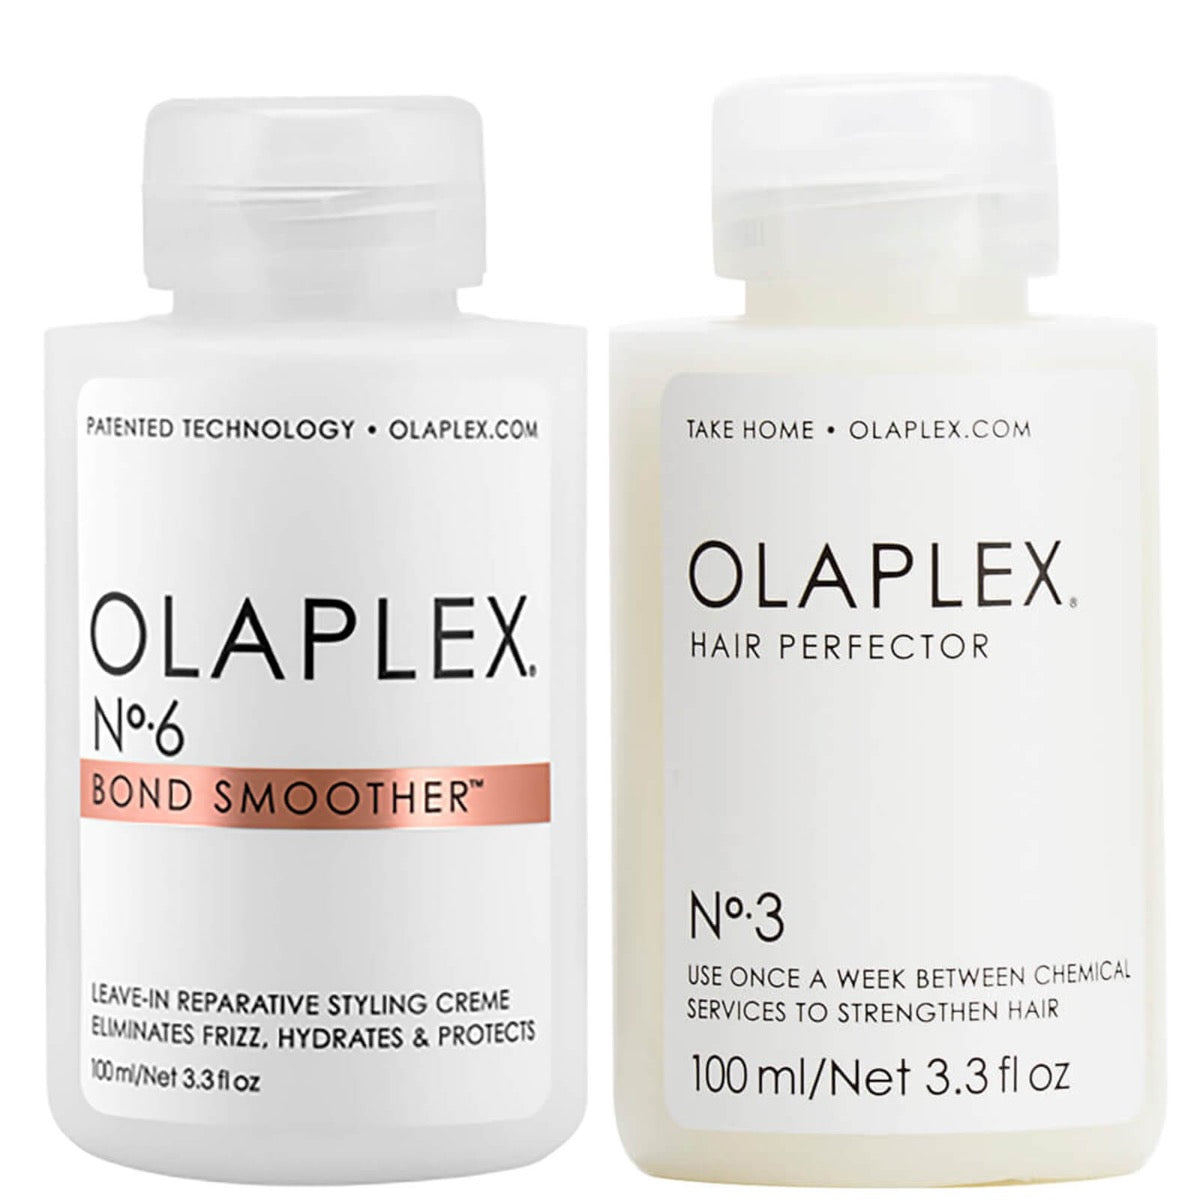 Olaplex No.3 and No.6 Duo